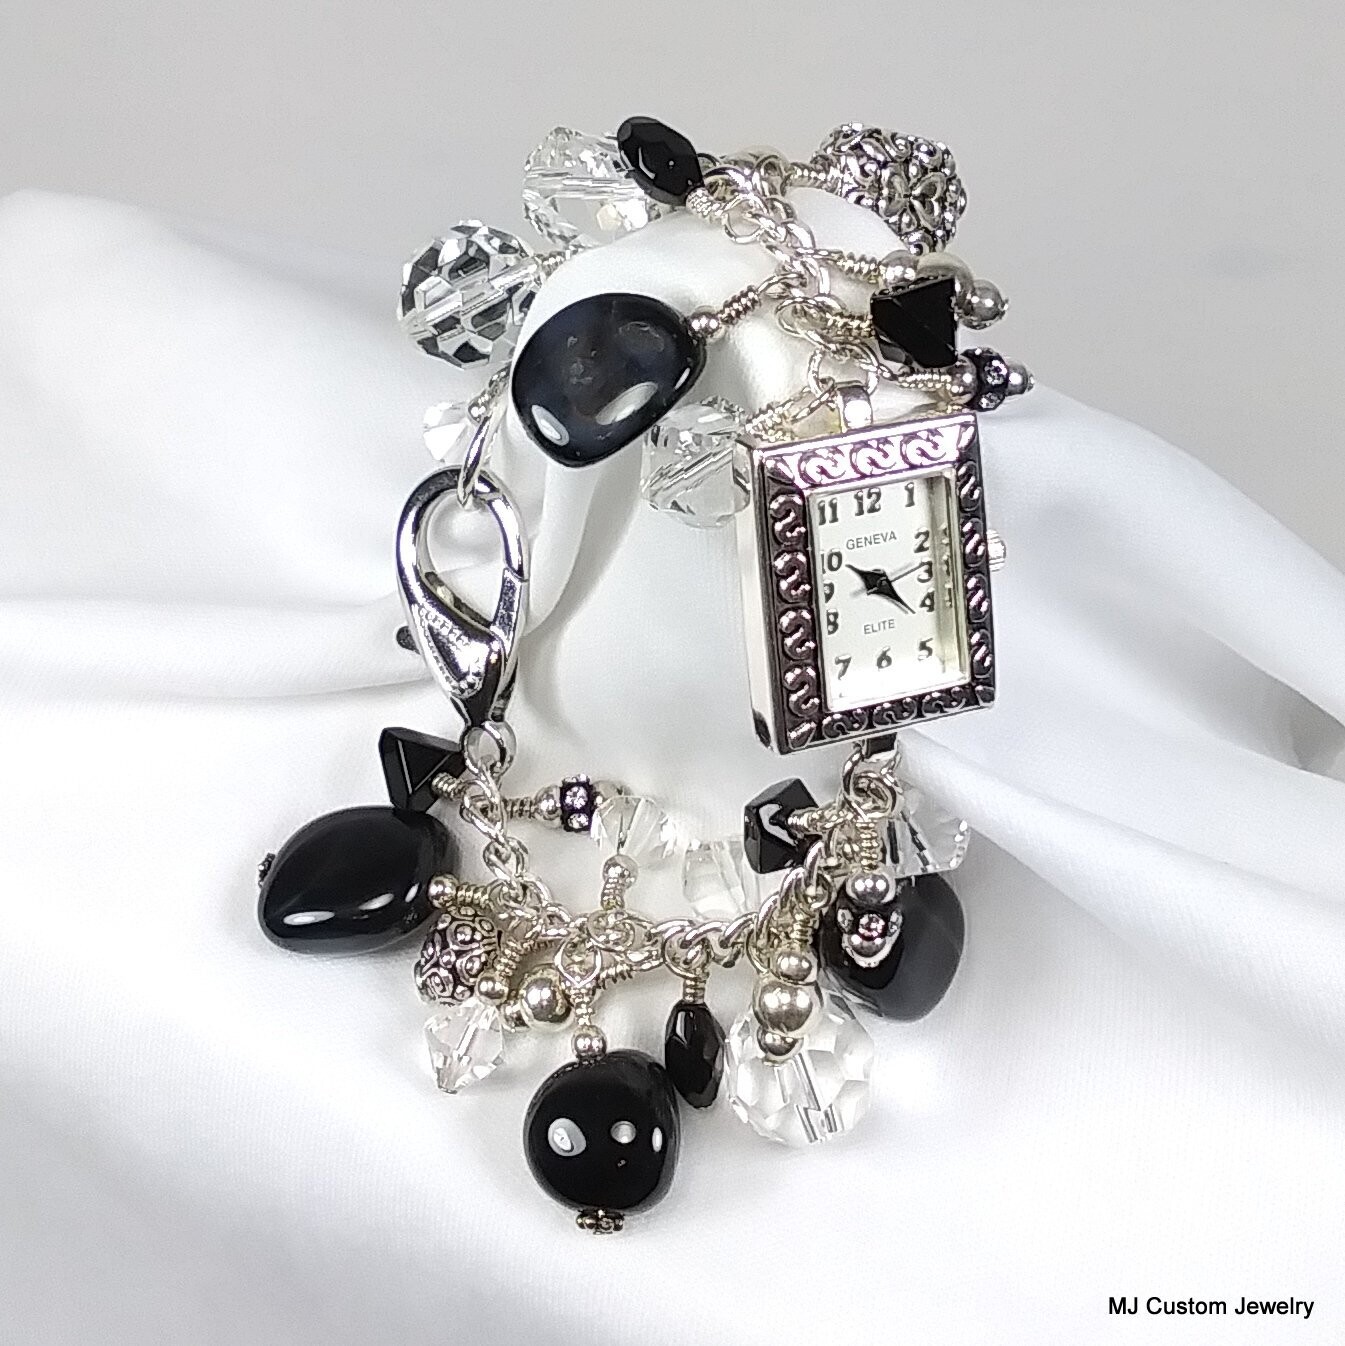 Gemstone Charm Bracelet Watch | Anne Klein